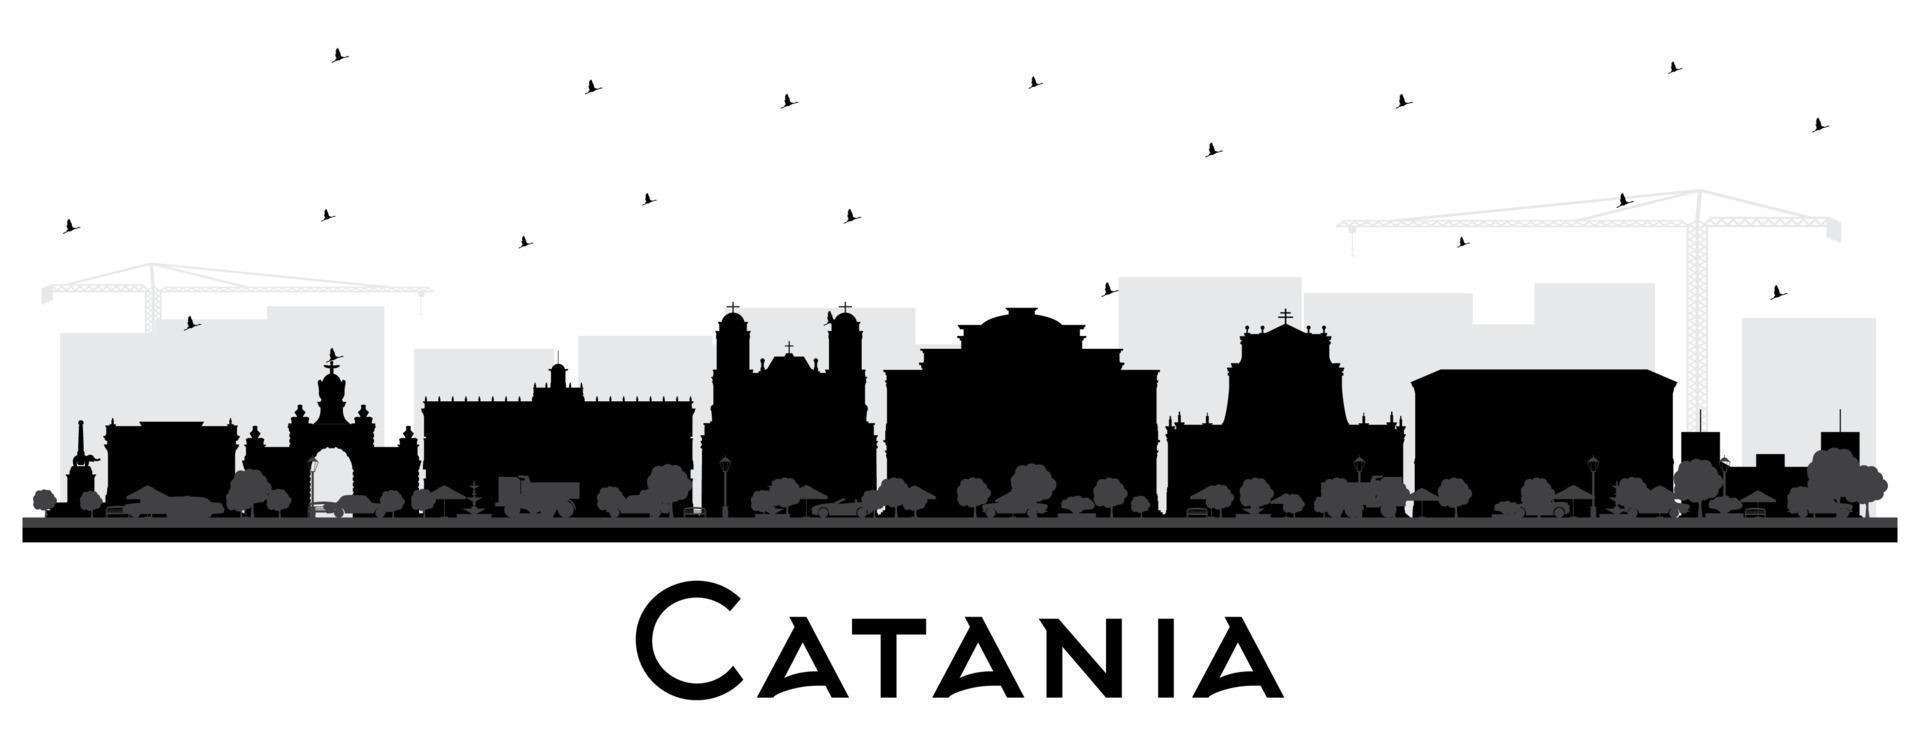 catania Italien stad horisont silhuett med svart byggnader isolerat på vit. vektor